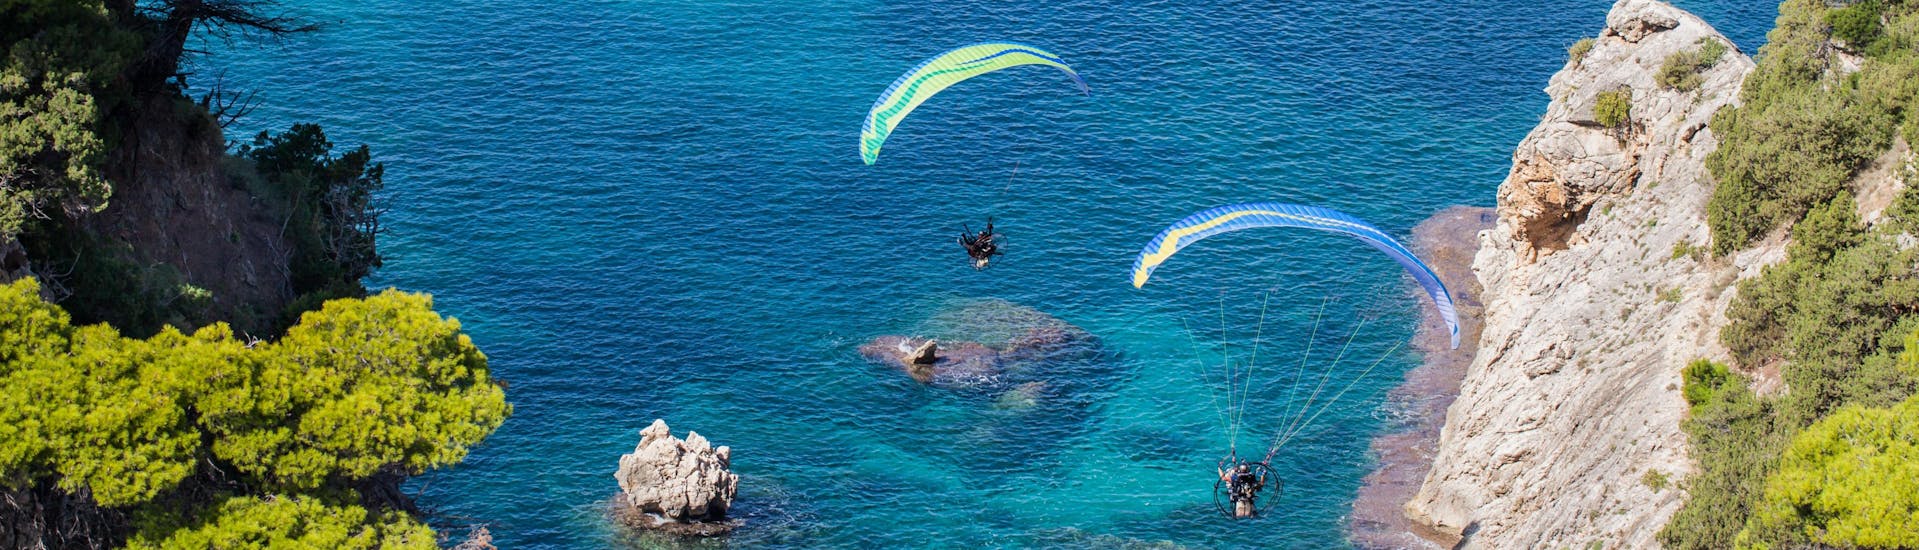 Un uomo sta facendo un volo in parapendio biposto nell'hotspot di parapendio presso Creta.